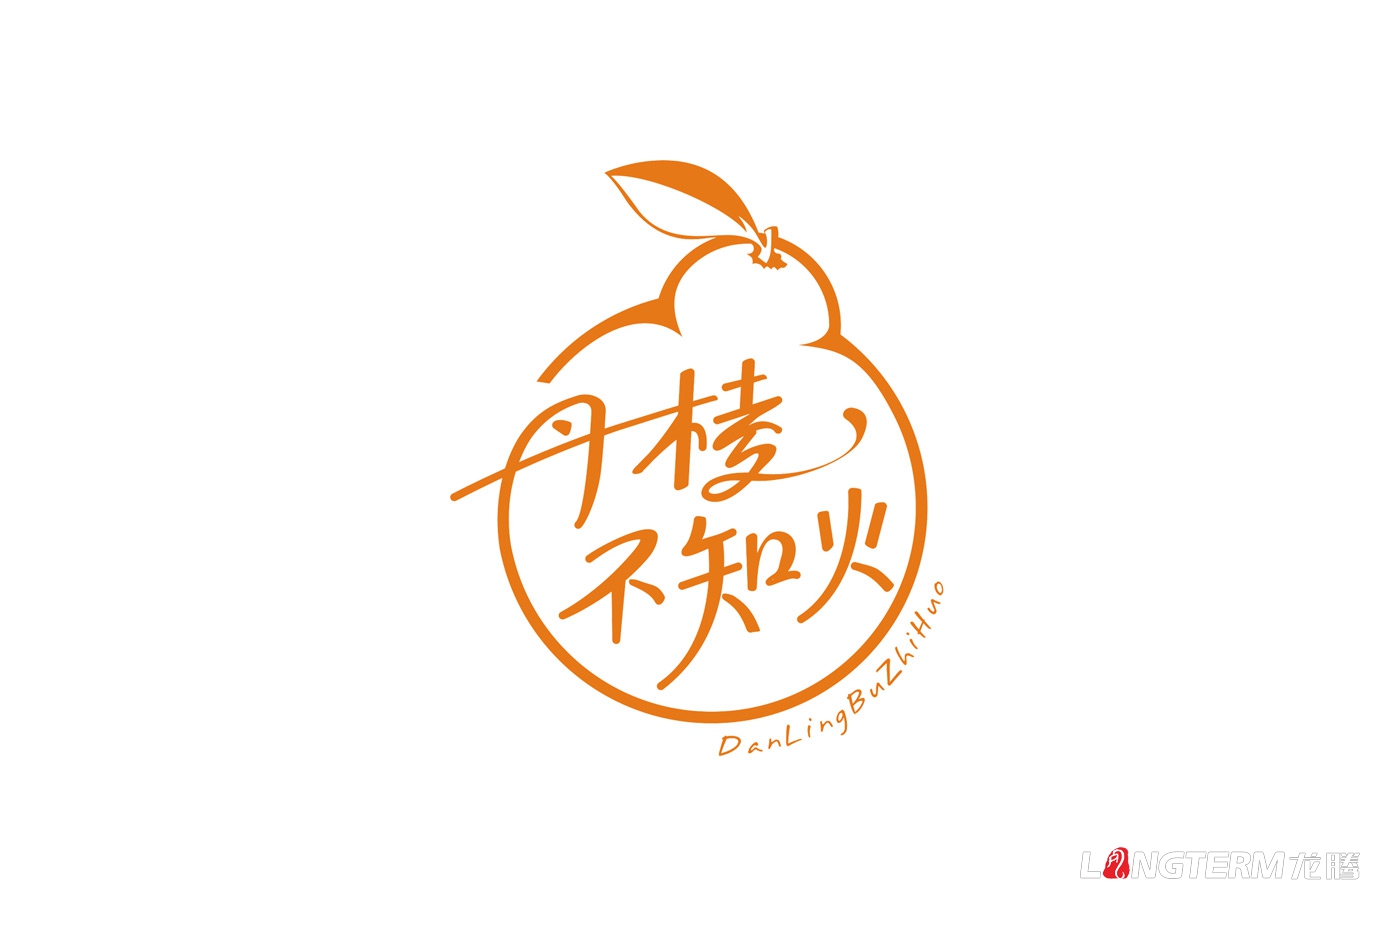 丹棱不知火形象包装设计_眉山市蒲江丑柑水果橘子橙子品牌包装箱设计公司